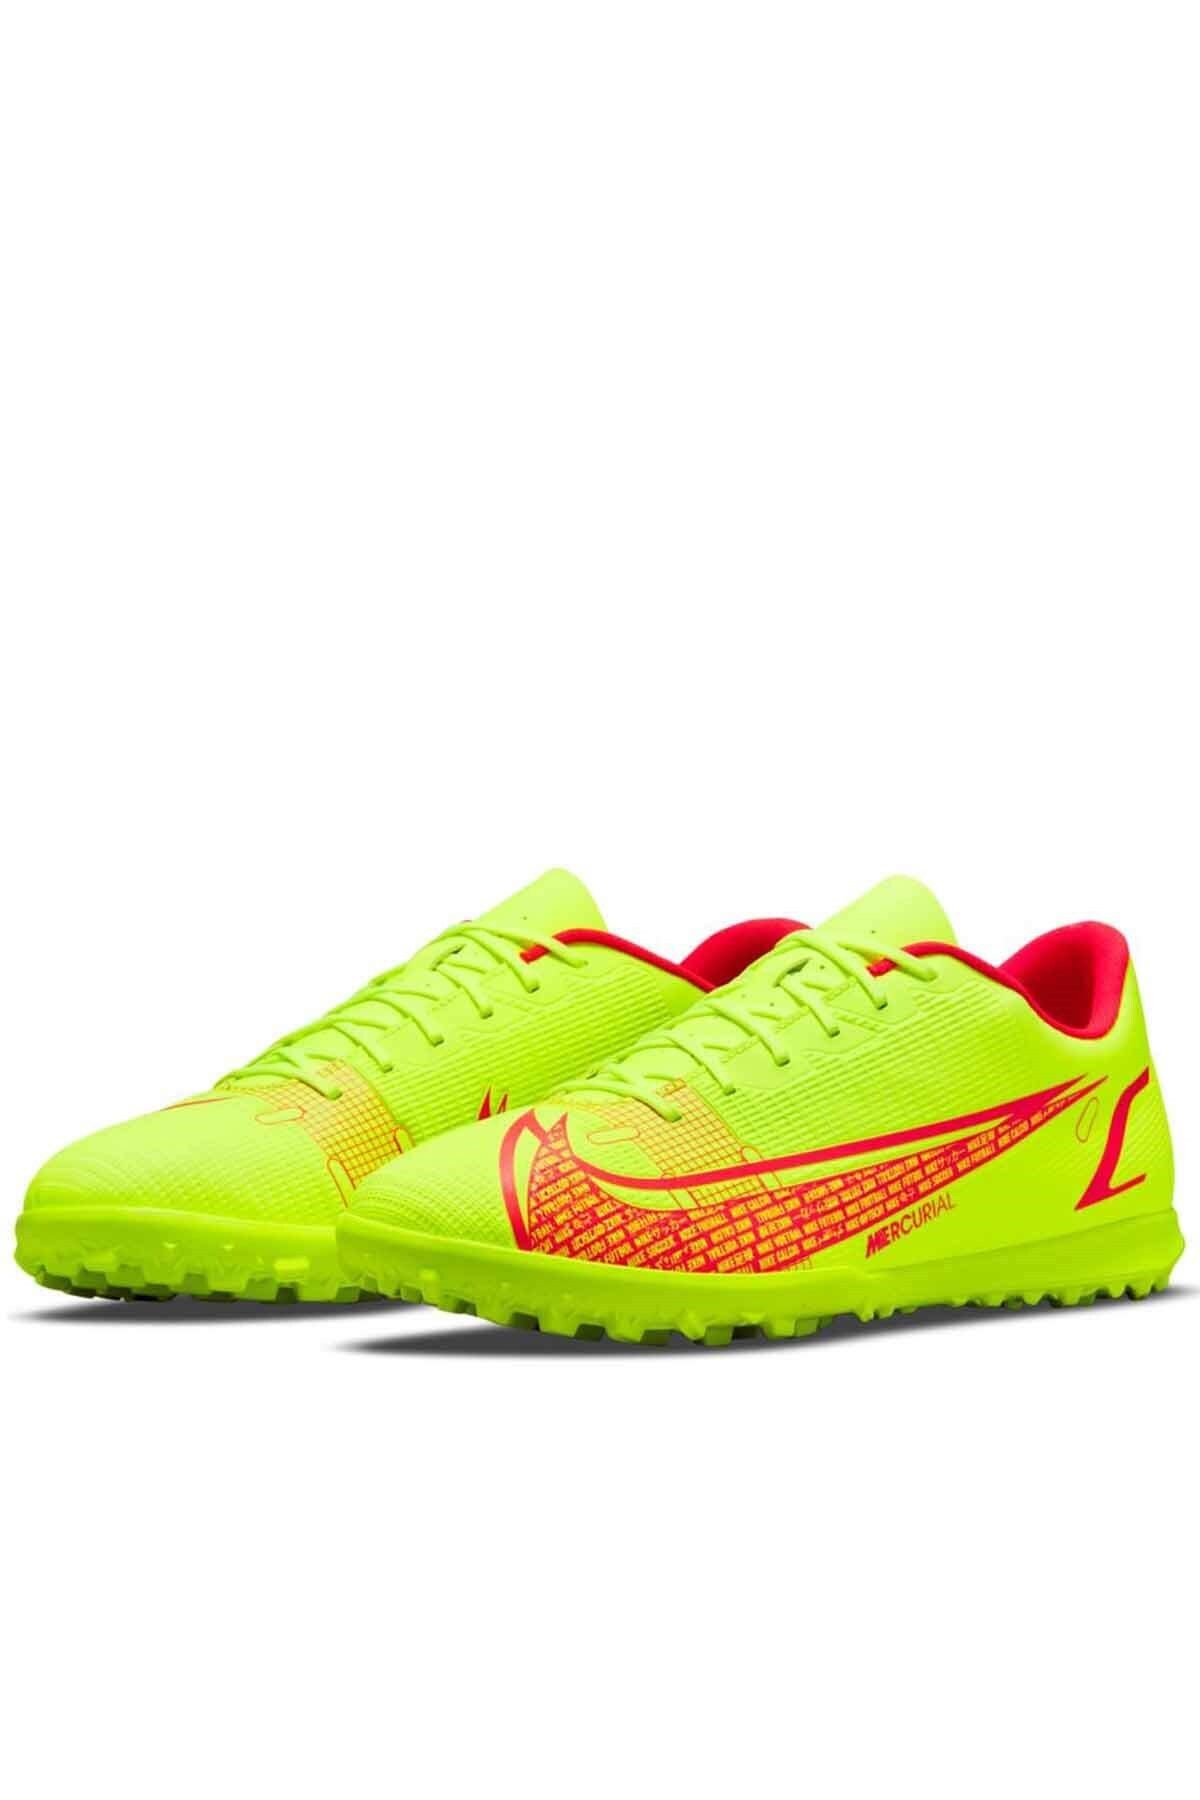 Nike Vapor 14 Club Tf Erkek Halı Saha Ayakkabı Cv0985 760-sarı